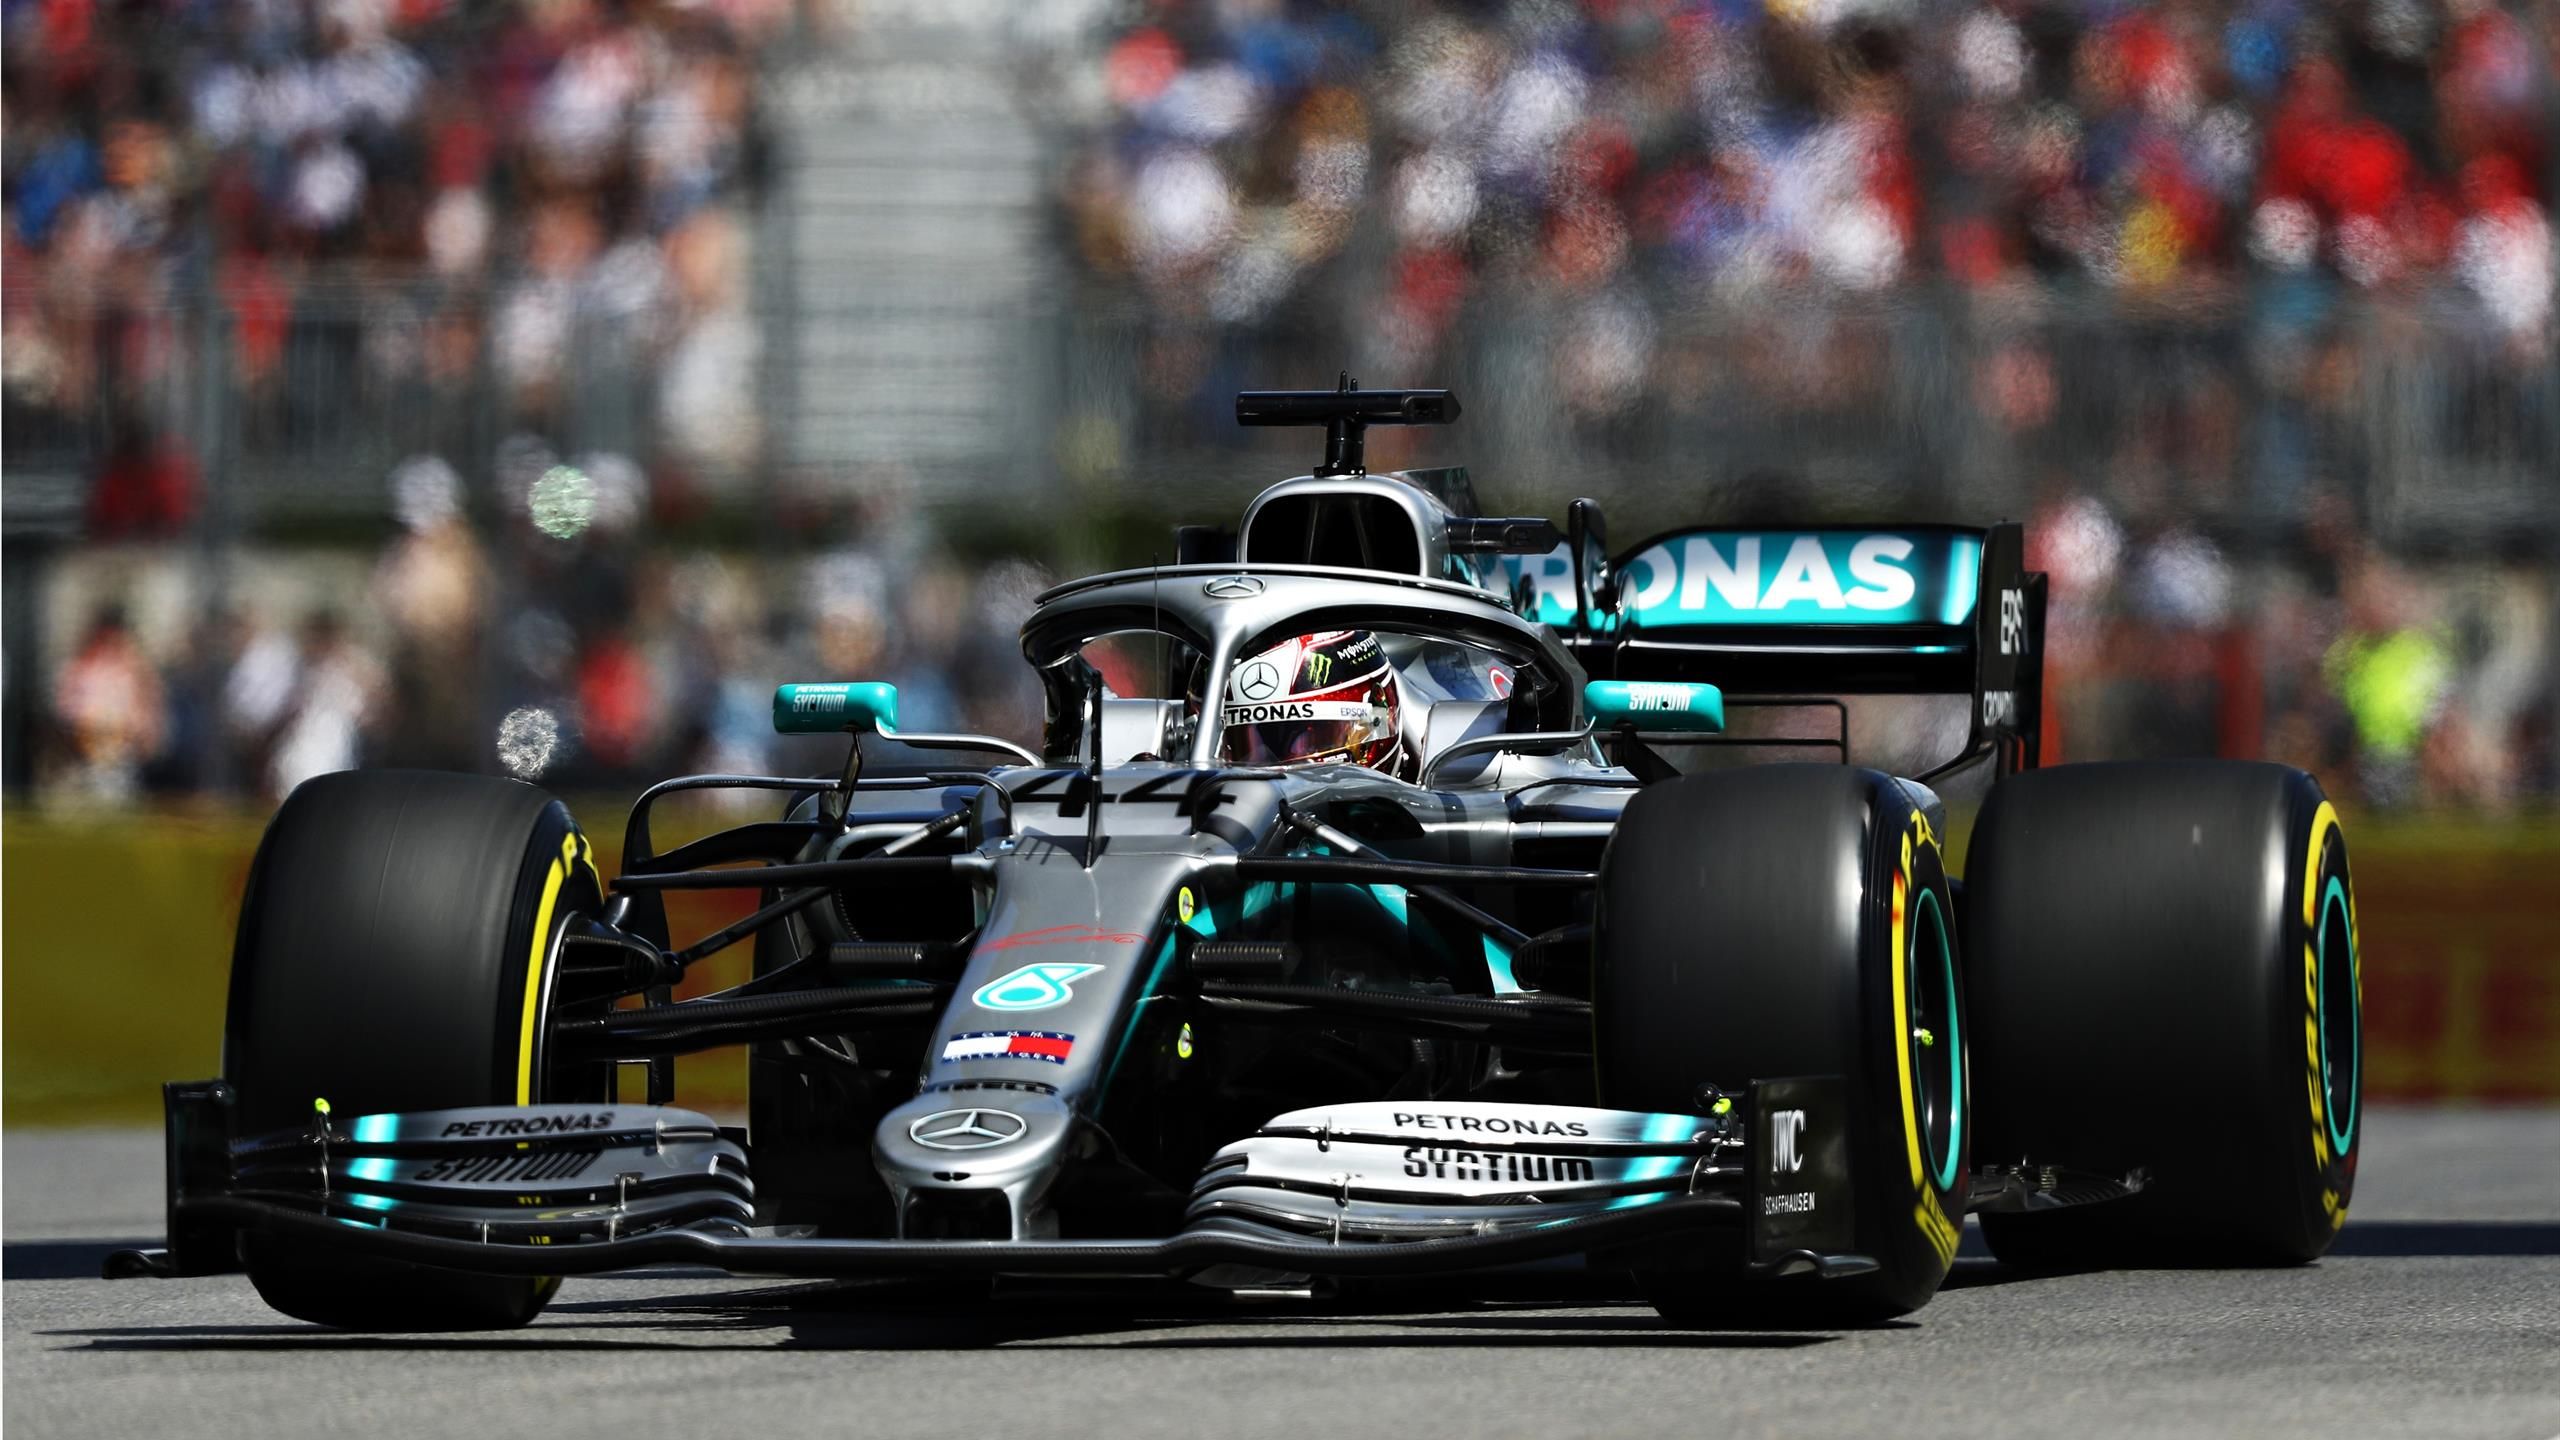 GP von Kanada 2019 Mercedes von Lewis Hamilton mit Hydraulik-Leck